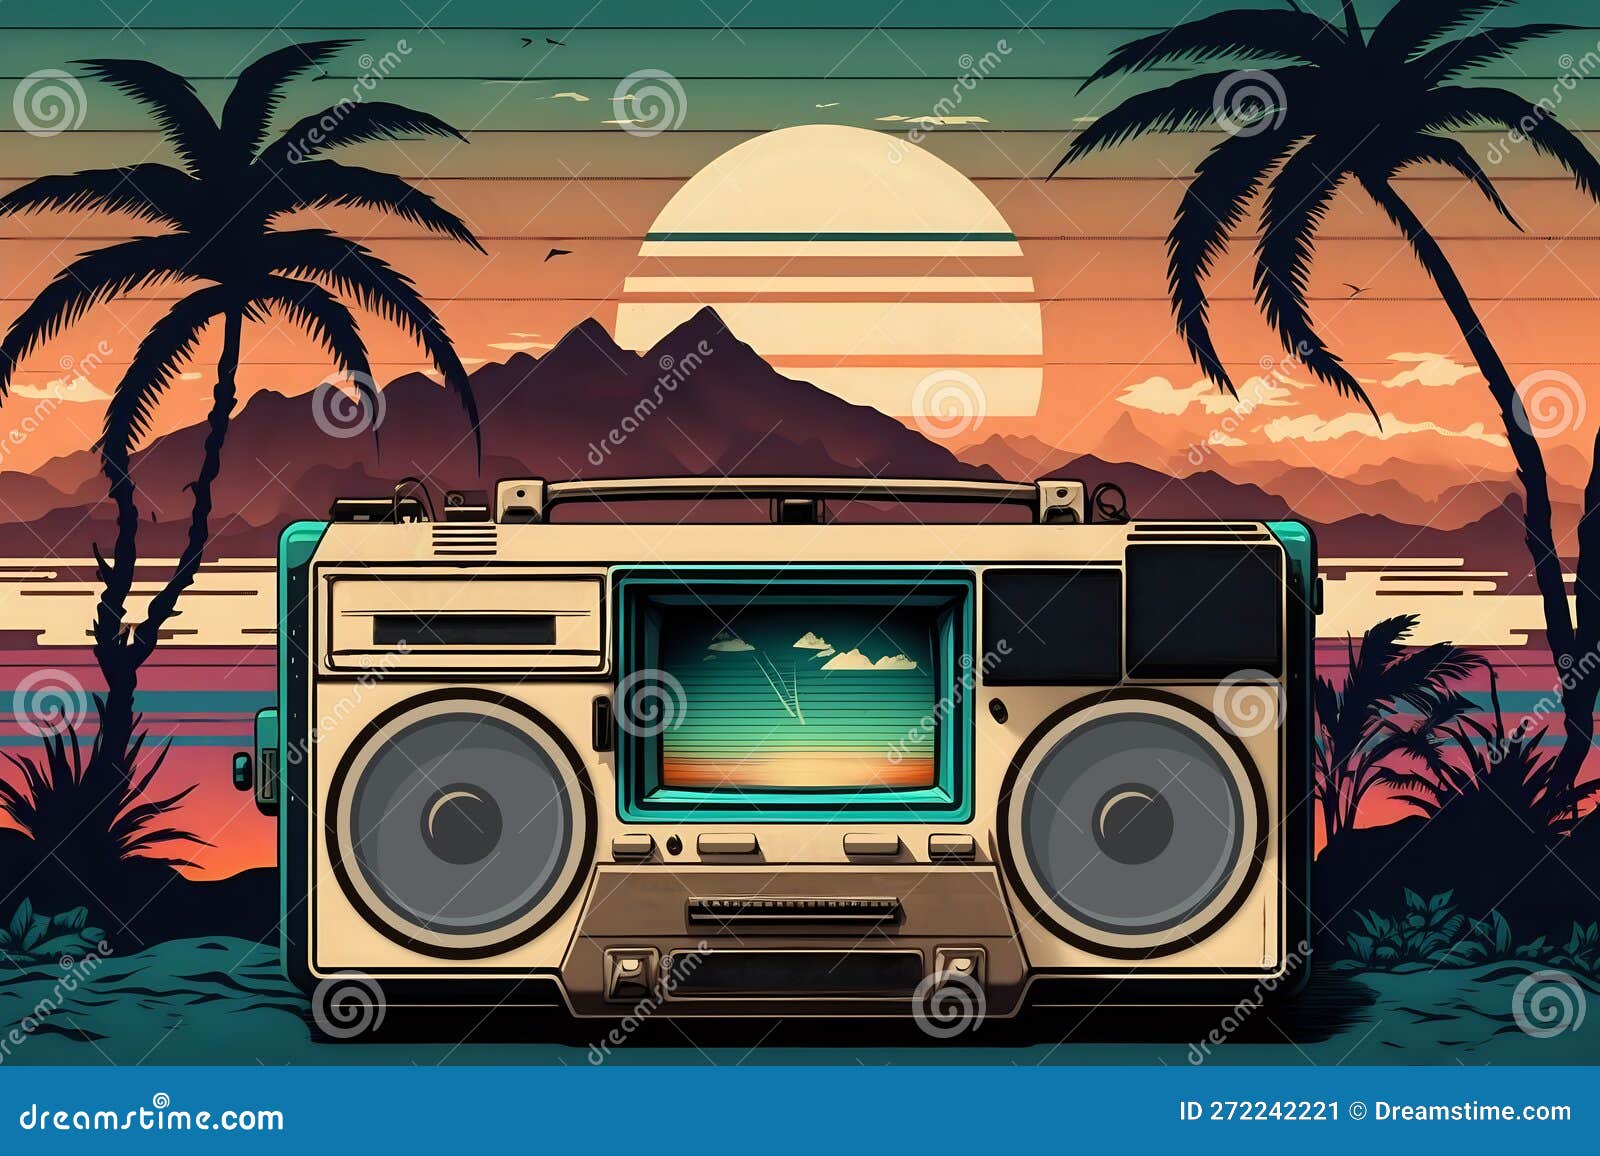 Radio Retro De Fondo De Los Años 80 Stock de ilustración